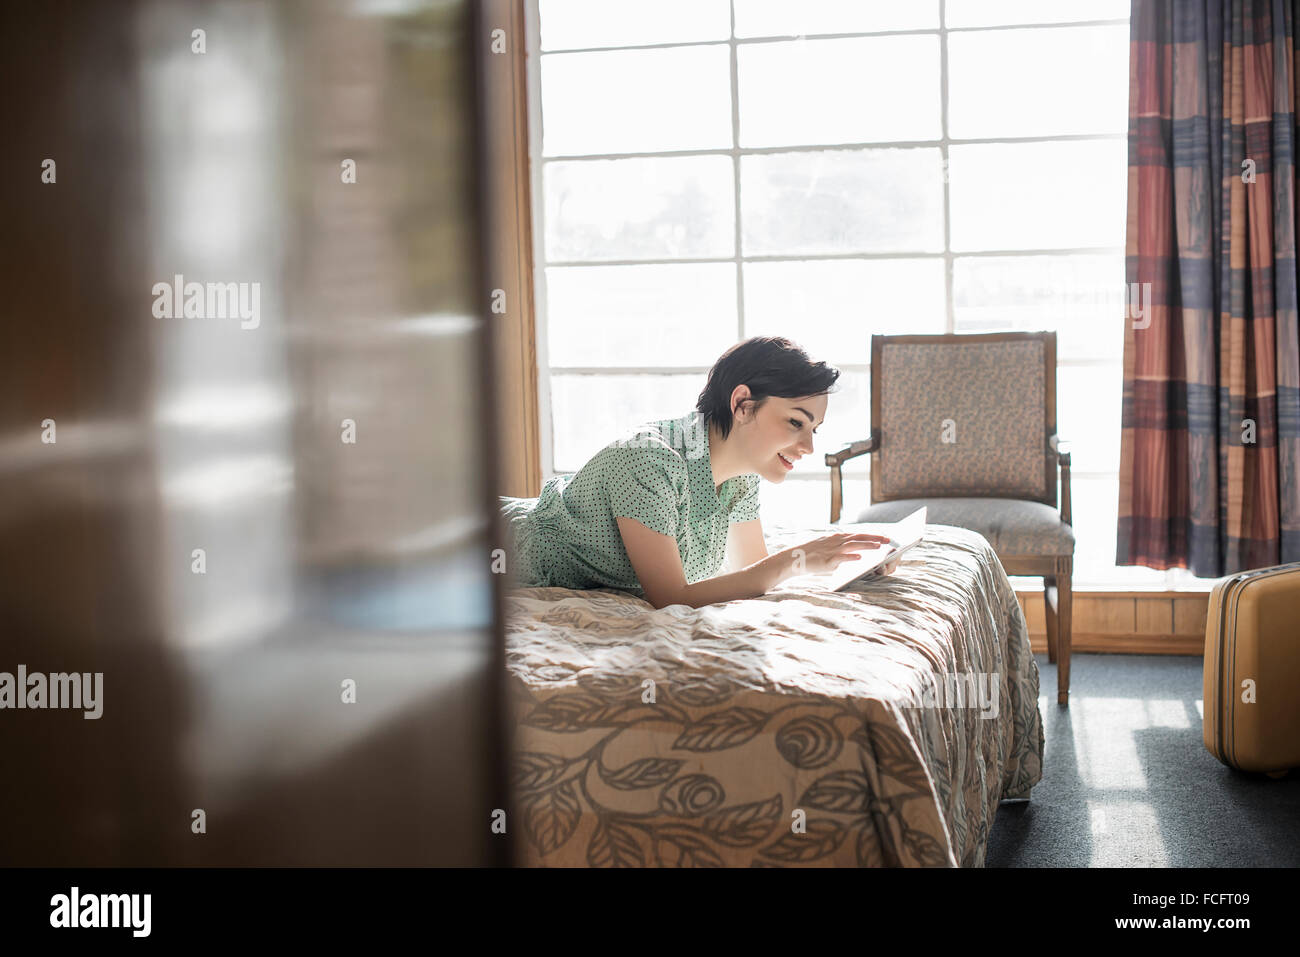 Eine junge Frau auf einem Bett in einem Motelzimmer mit einem digital-Tablette Touchscreen liegend überprüft Vorhänge, mobile Kommunikation Internet Stockfoto